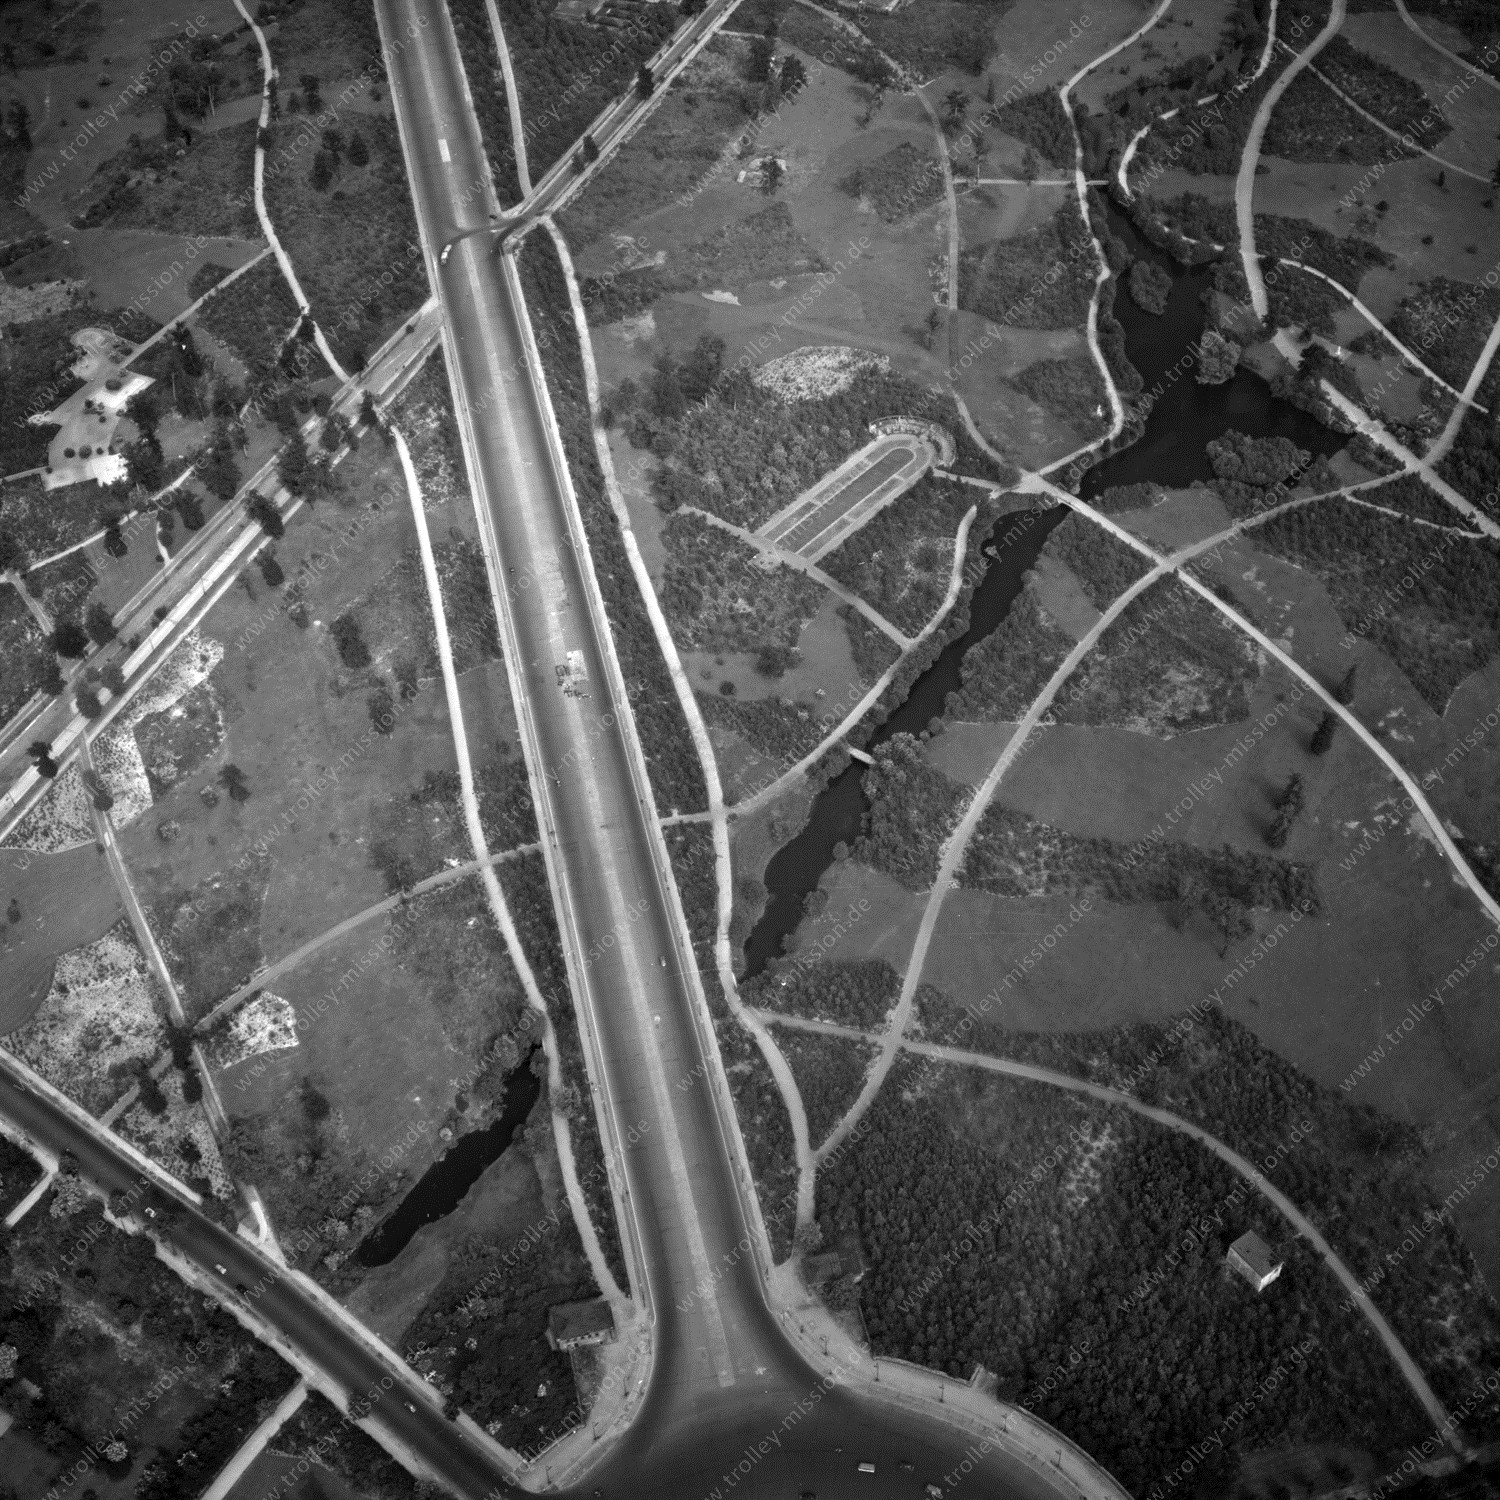 Alte Fotos und Luftbilder von Berlin - Luftbildaufnahme Nr. 06 - Historische Luftaufnahmen von West-Berlin aus dem Jahr 1954 - Flugstrecke Whiskey